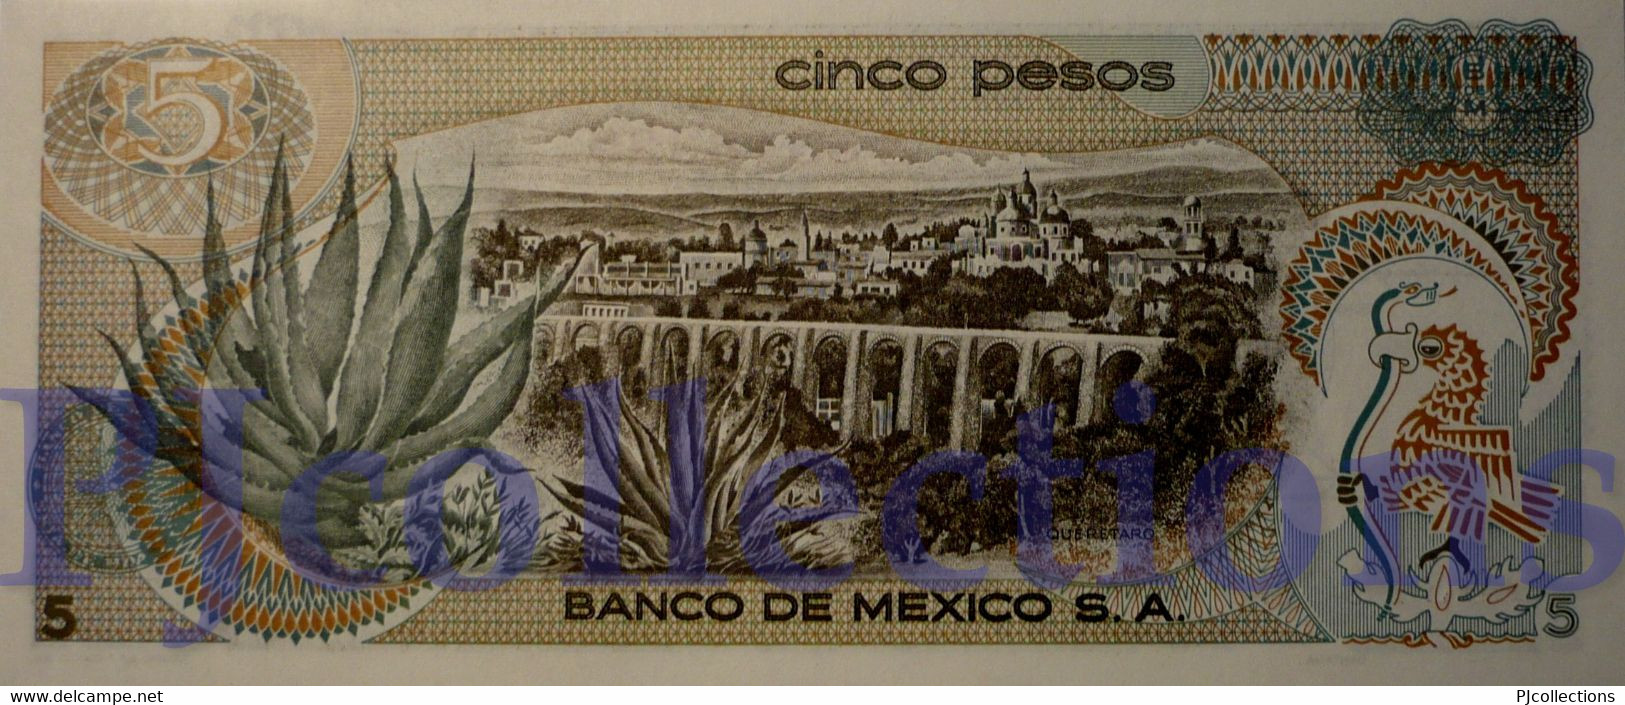 LOT MEXICO 5 PESOS 1972 PICK 62c UNC X 5 PCS - Mexico